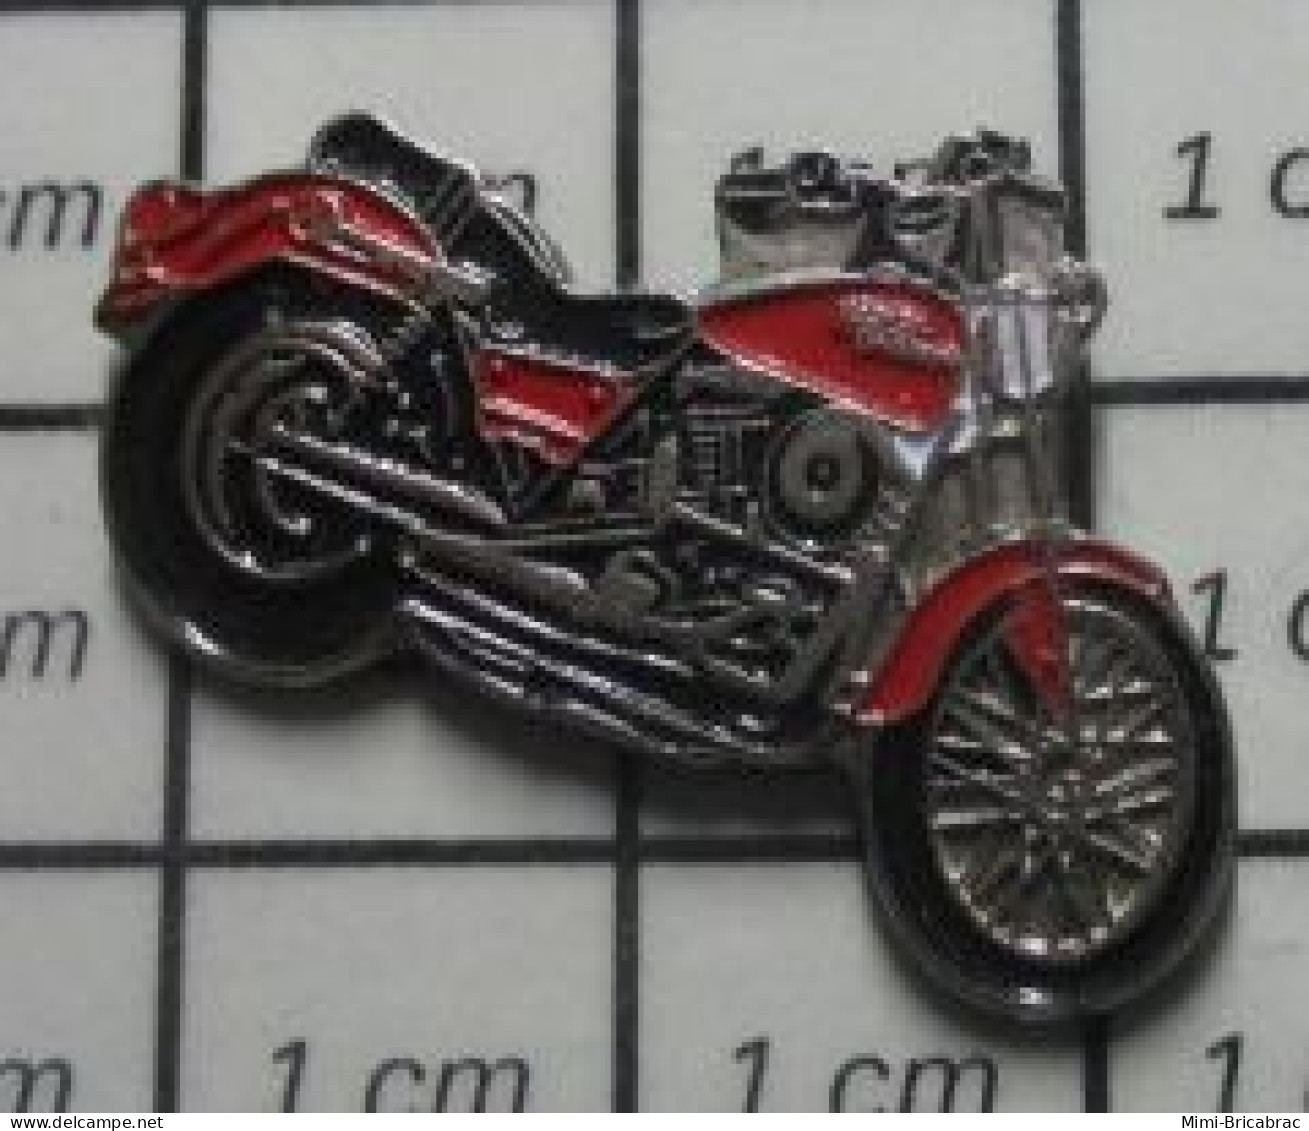 1010  Pin's Pins / Beau Et Rare / MOTOS / GROSSE MOTO ROUTIERE RETRO ROUGE PEUT ETRE HARLEY ? - Motorräder